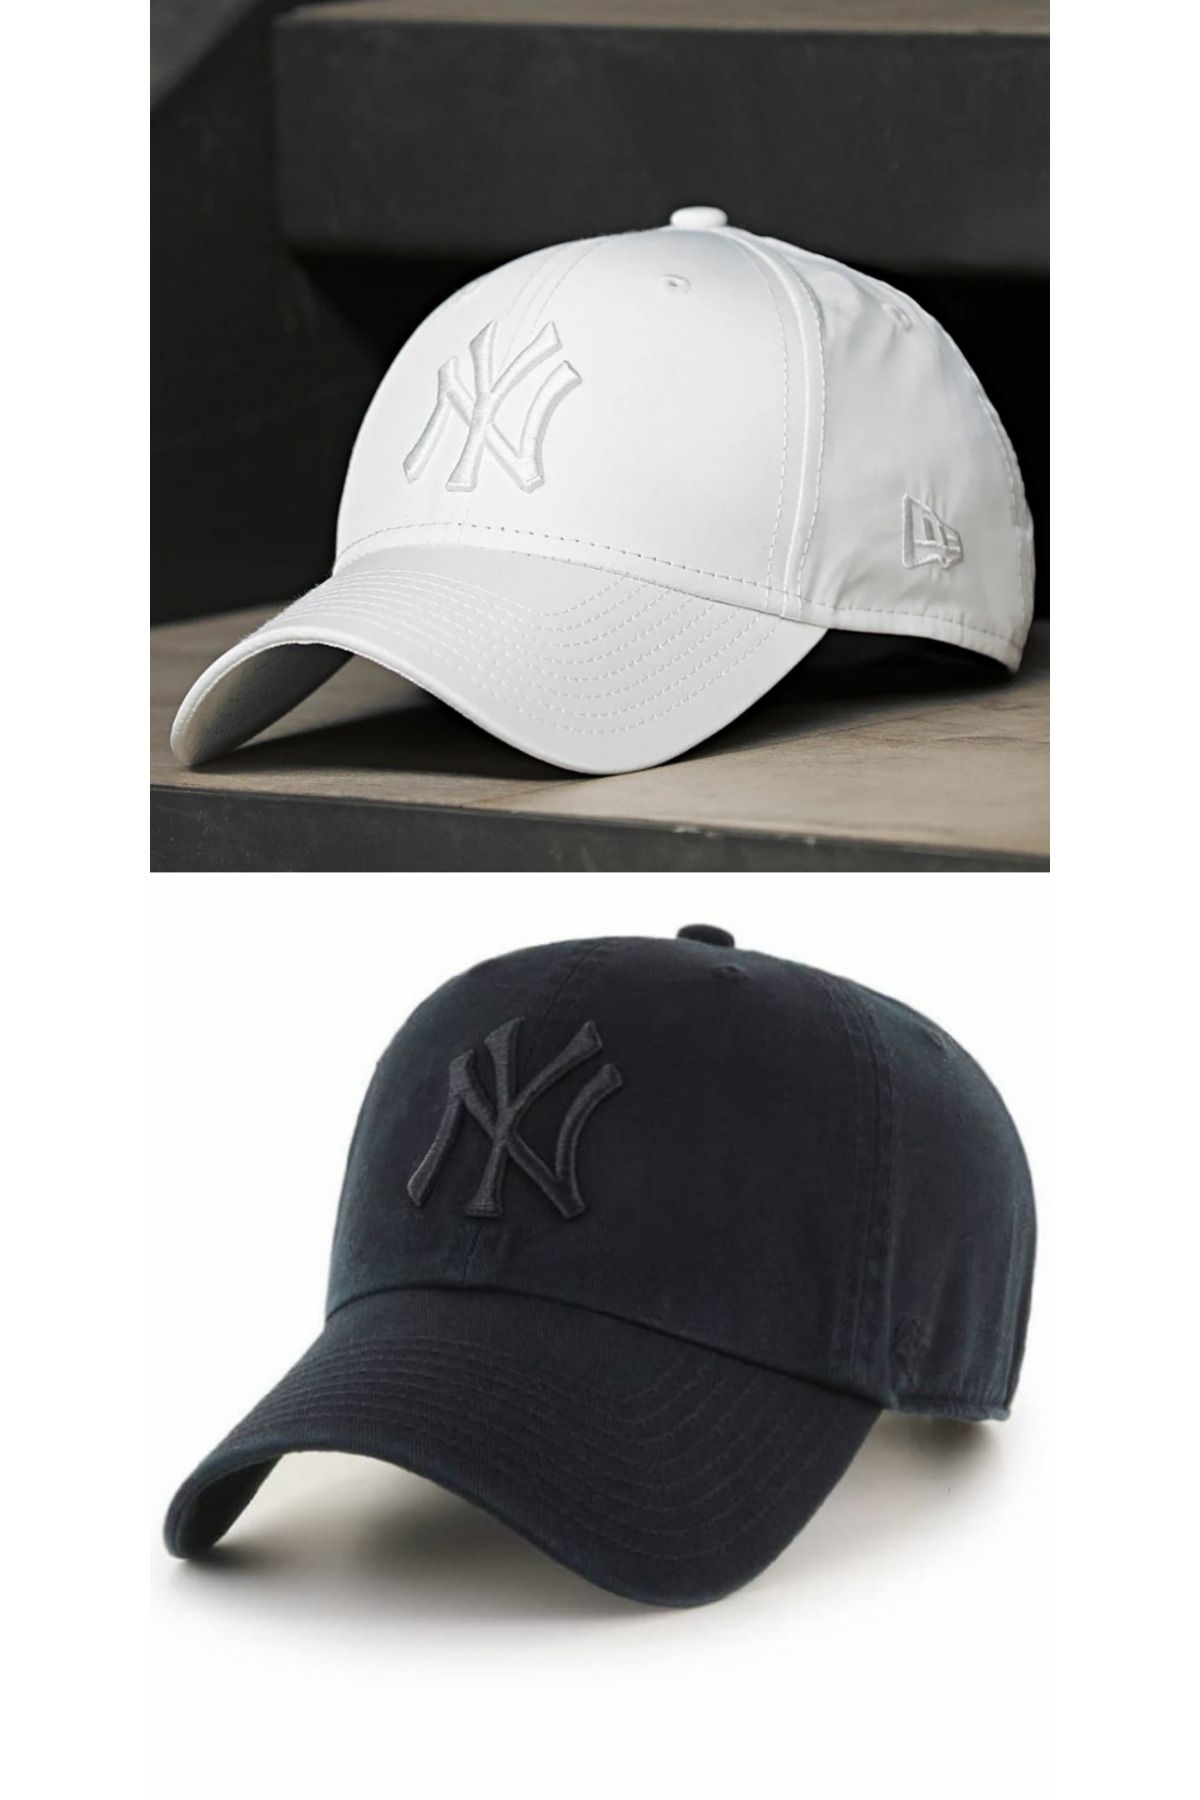 GYES Sports Nylon Hat Unisex Set of 2 Adjustable with Velcro on